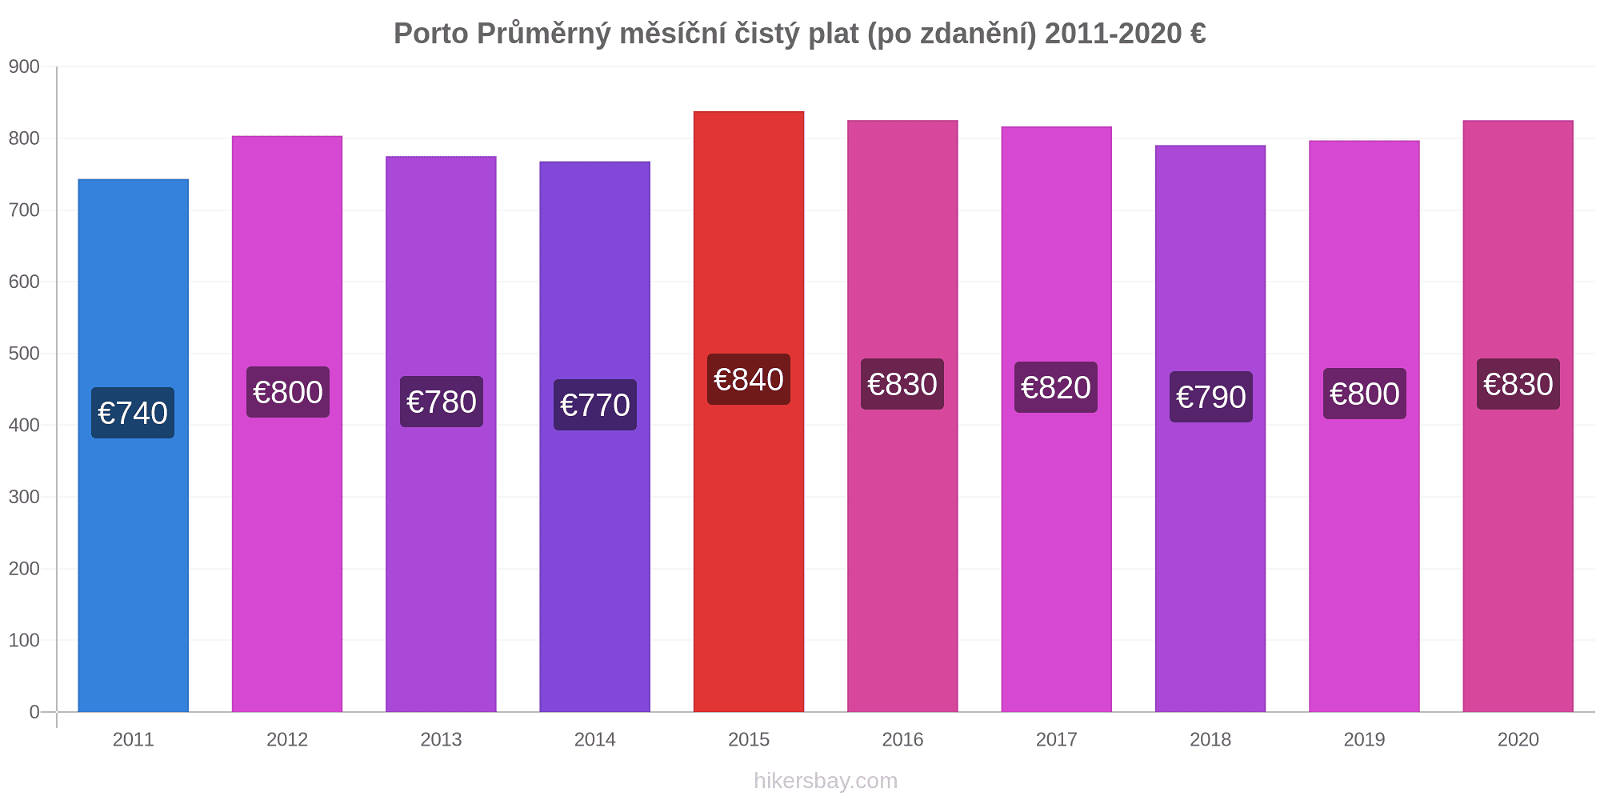 Porto změny cen Průměrný měsíční čistý plat (po zdanění) hikersbay.com